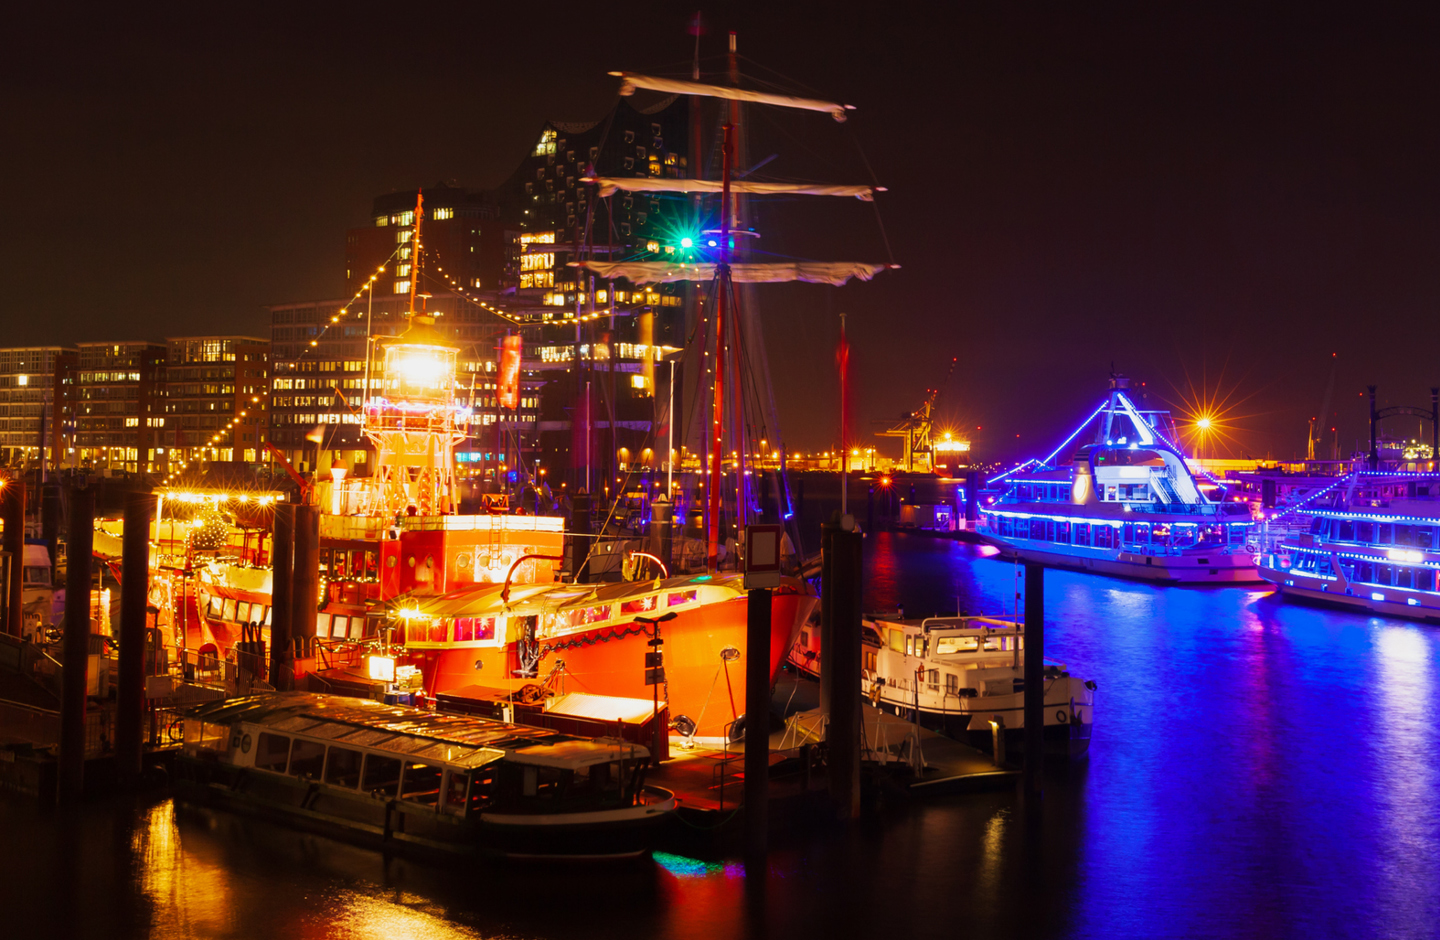 Feuerschiff im Hamburger Hafen als Weihnachtsfeier-Idee